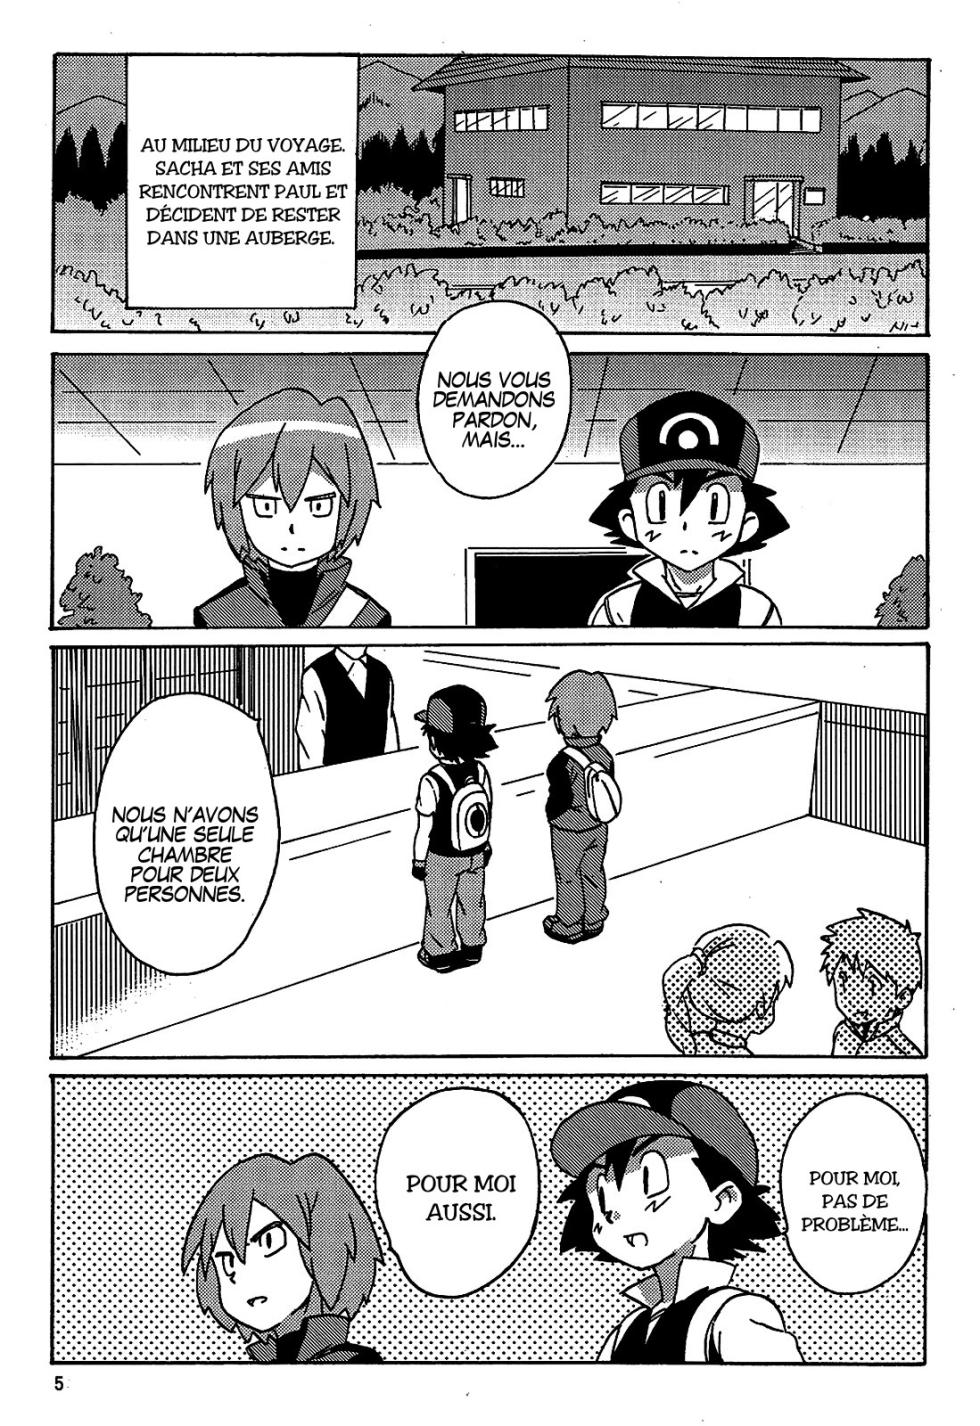 10NIN - Le Garçon Aux Diamants (Pokemon) - Page 3